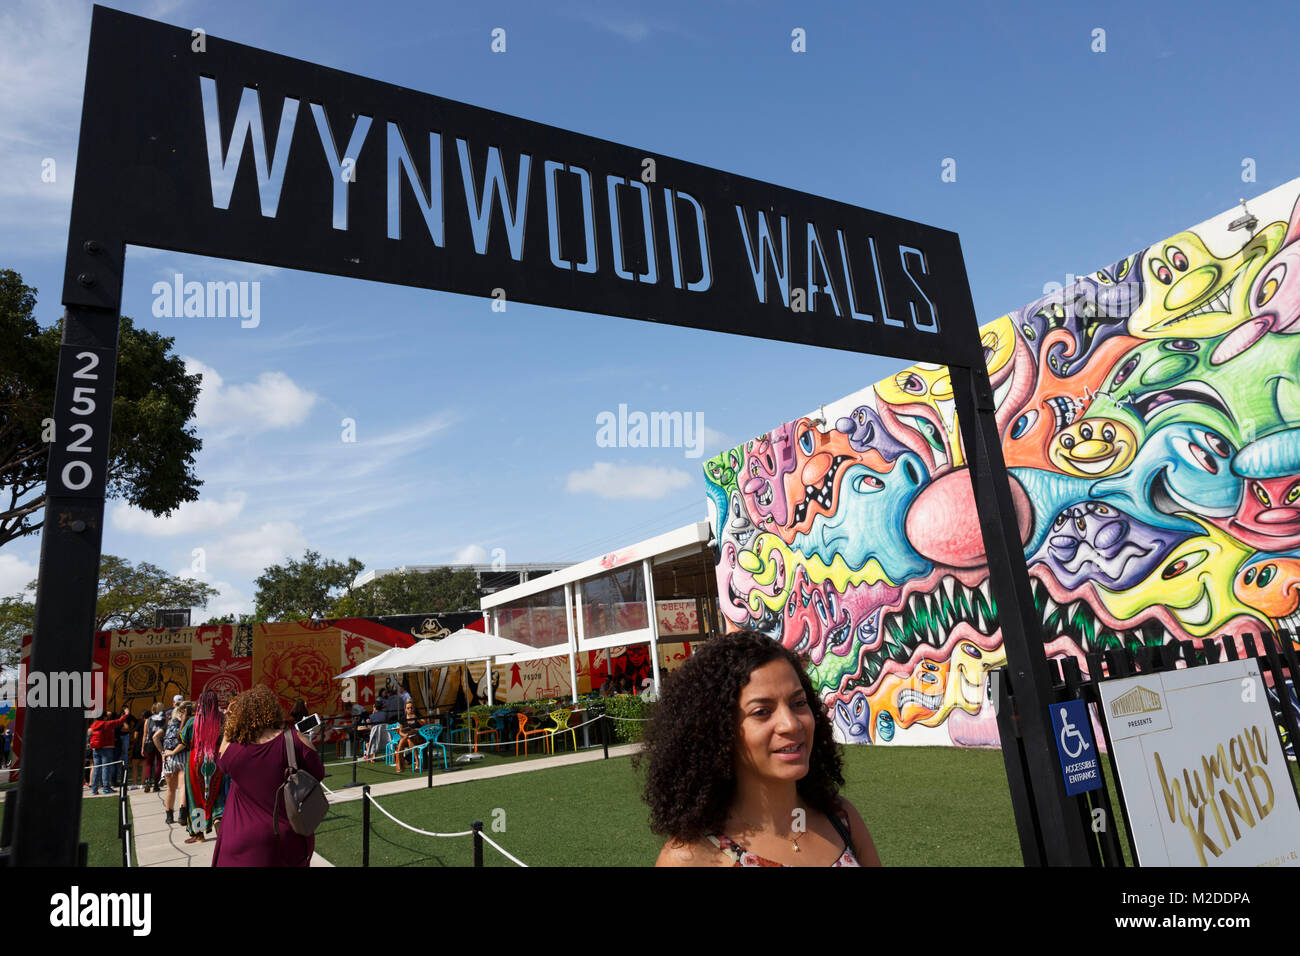 Wynwood Wänden Graffiti Kunst Ausstellung installation, Miami, Florida Stockfoto